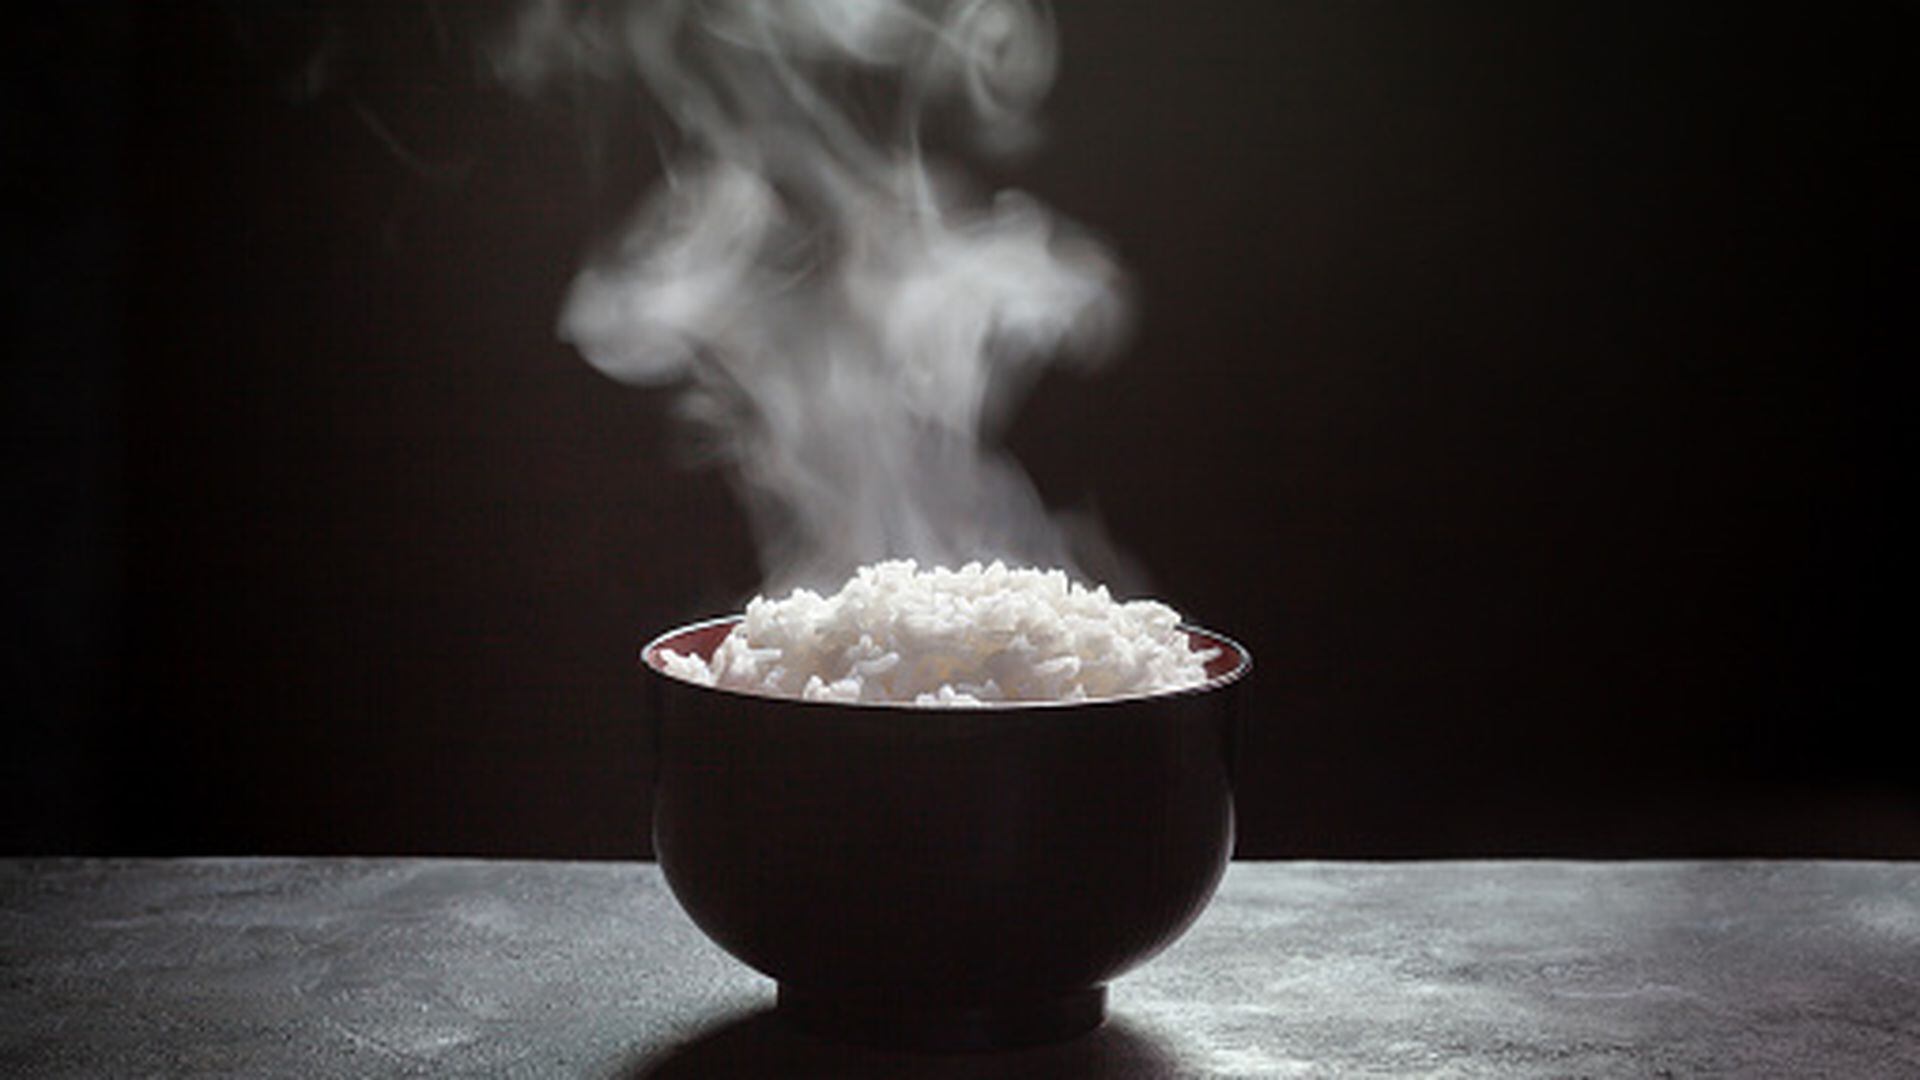 Te enseñamos cómo hacer arroz en el microondas – Diario Contraste